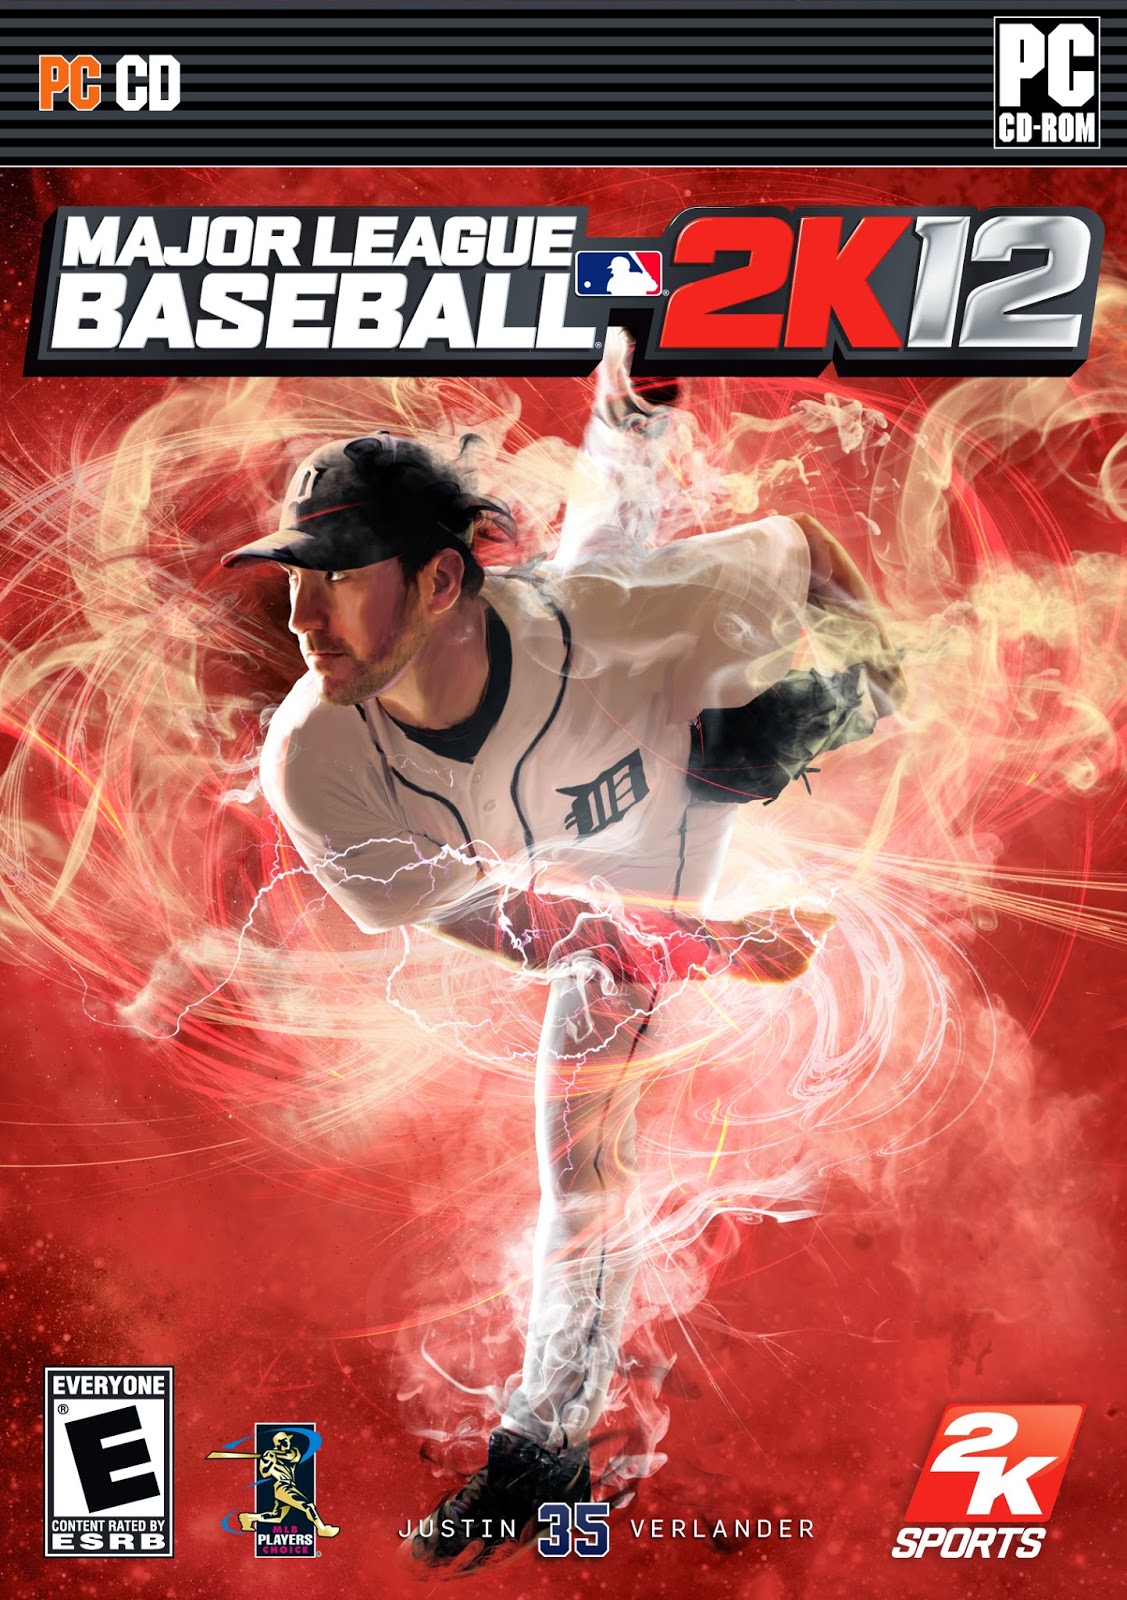 major league baseball 2k12 pc